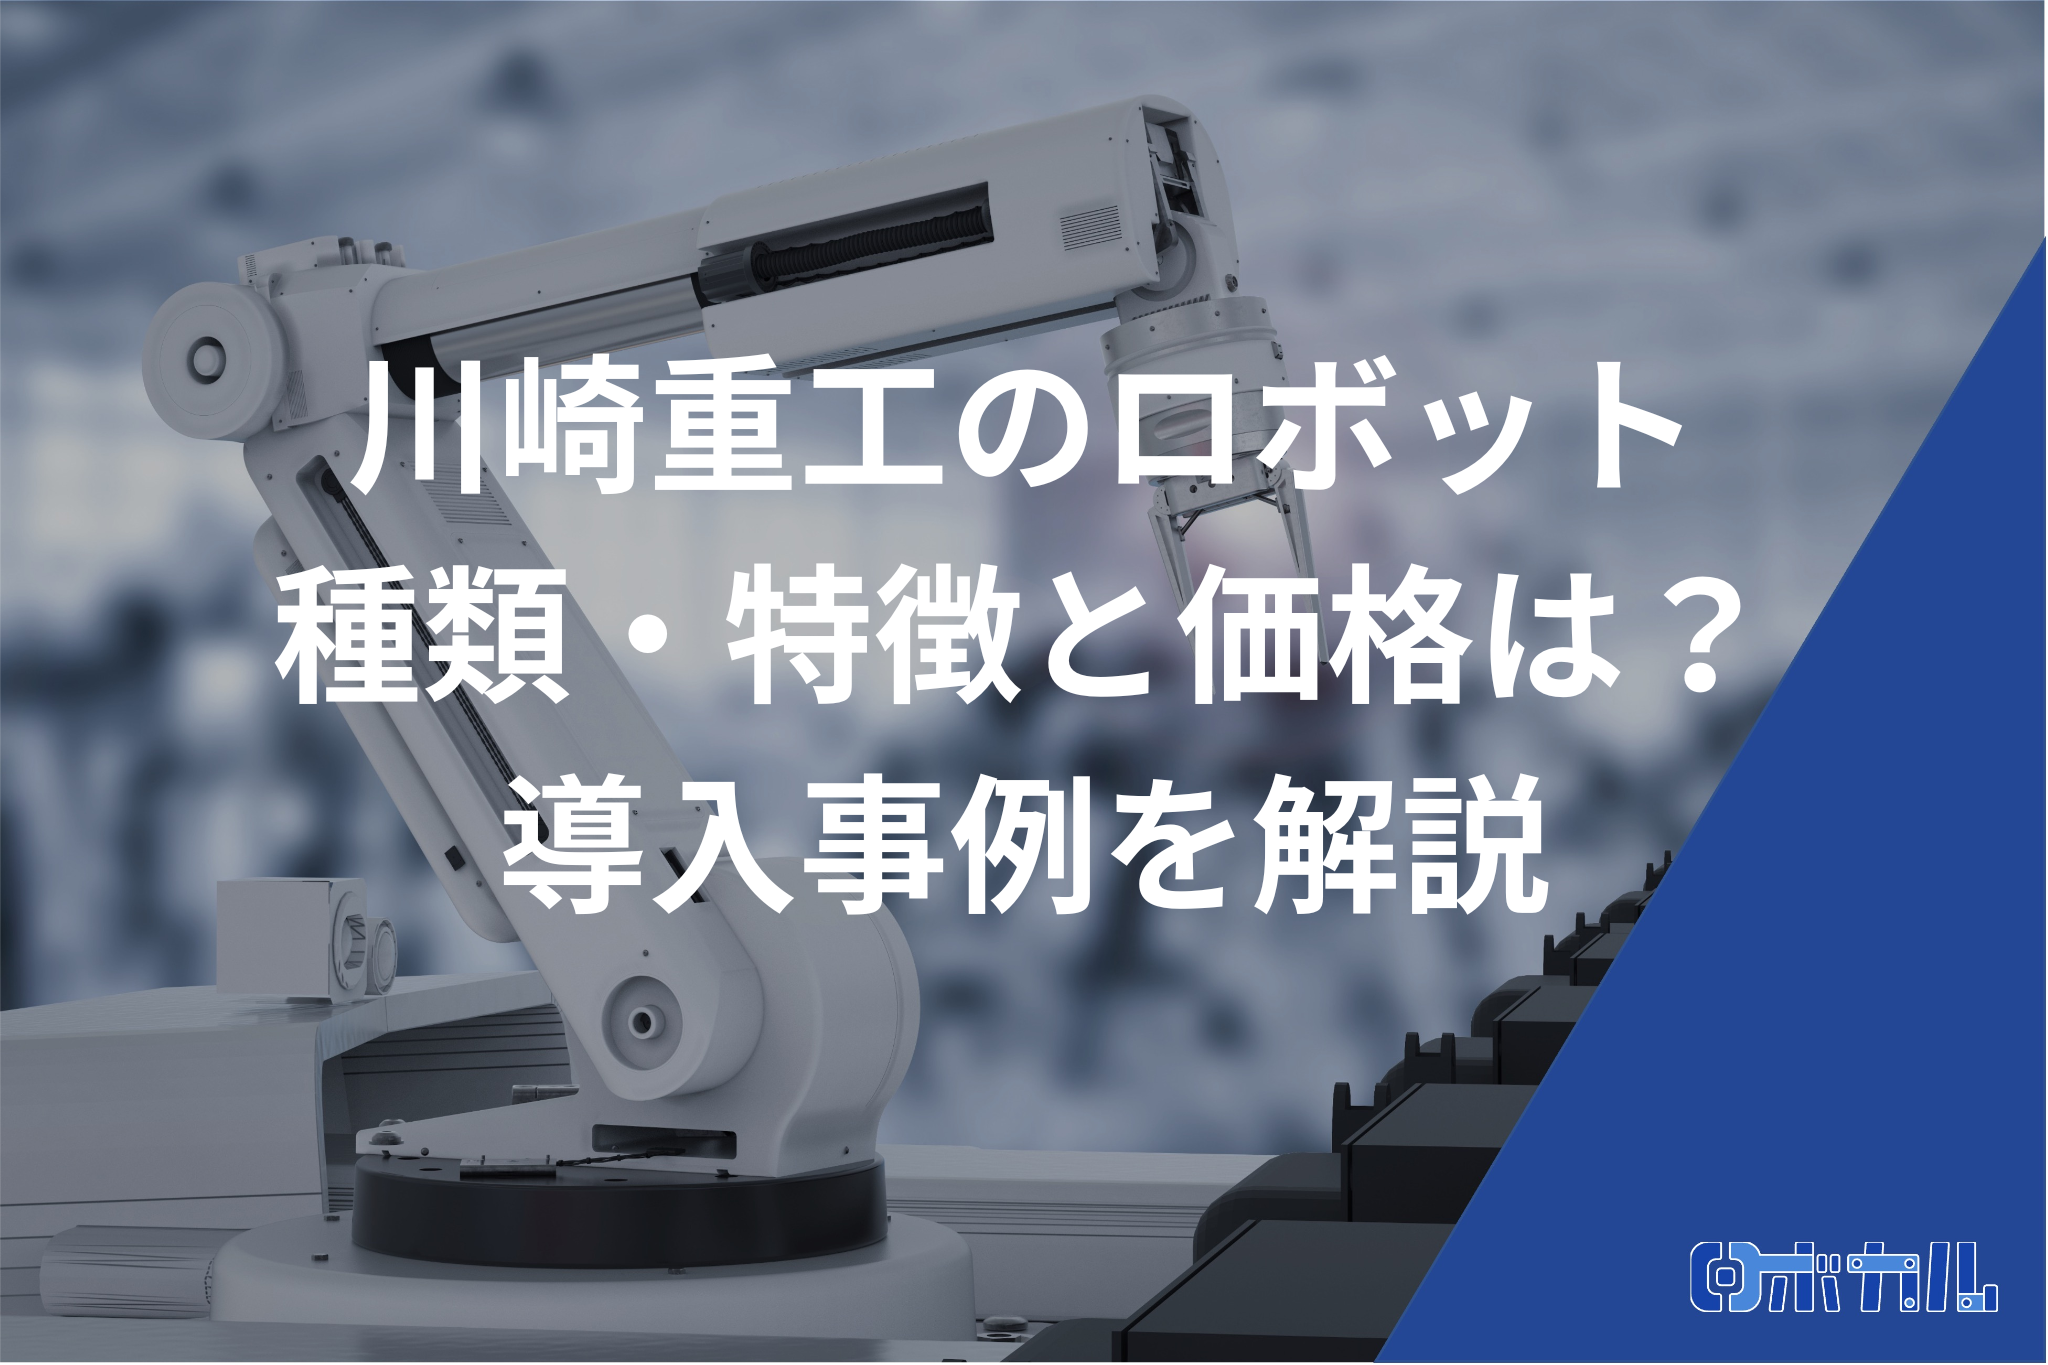 川崎重工のロボットについて記事